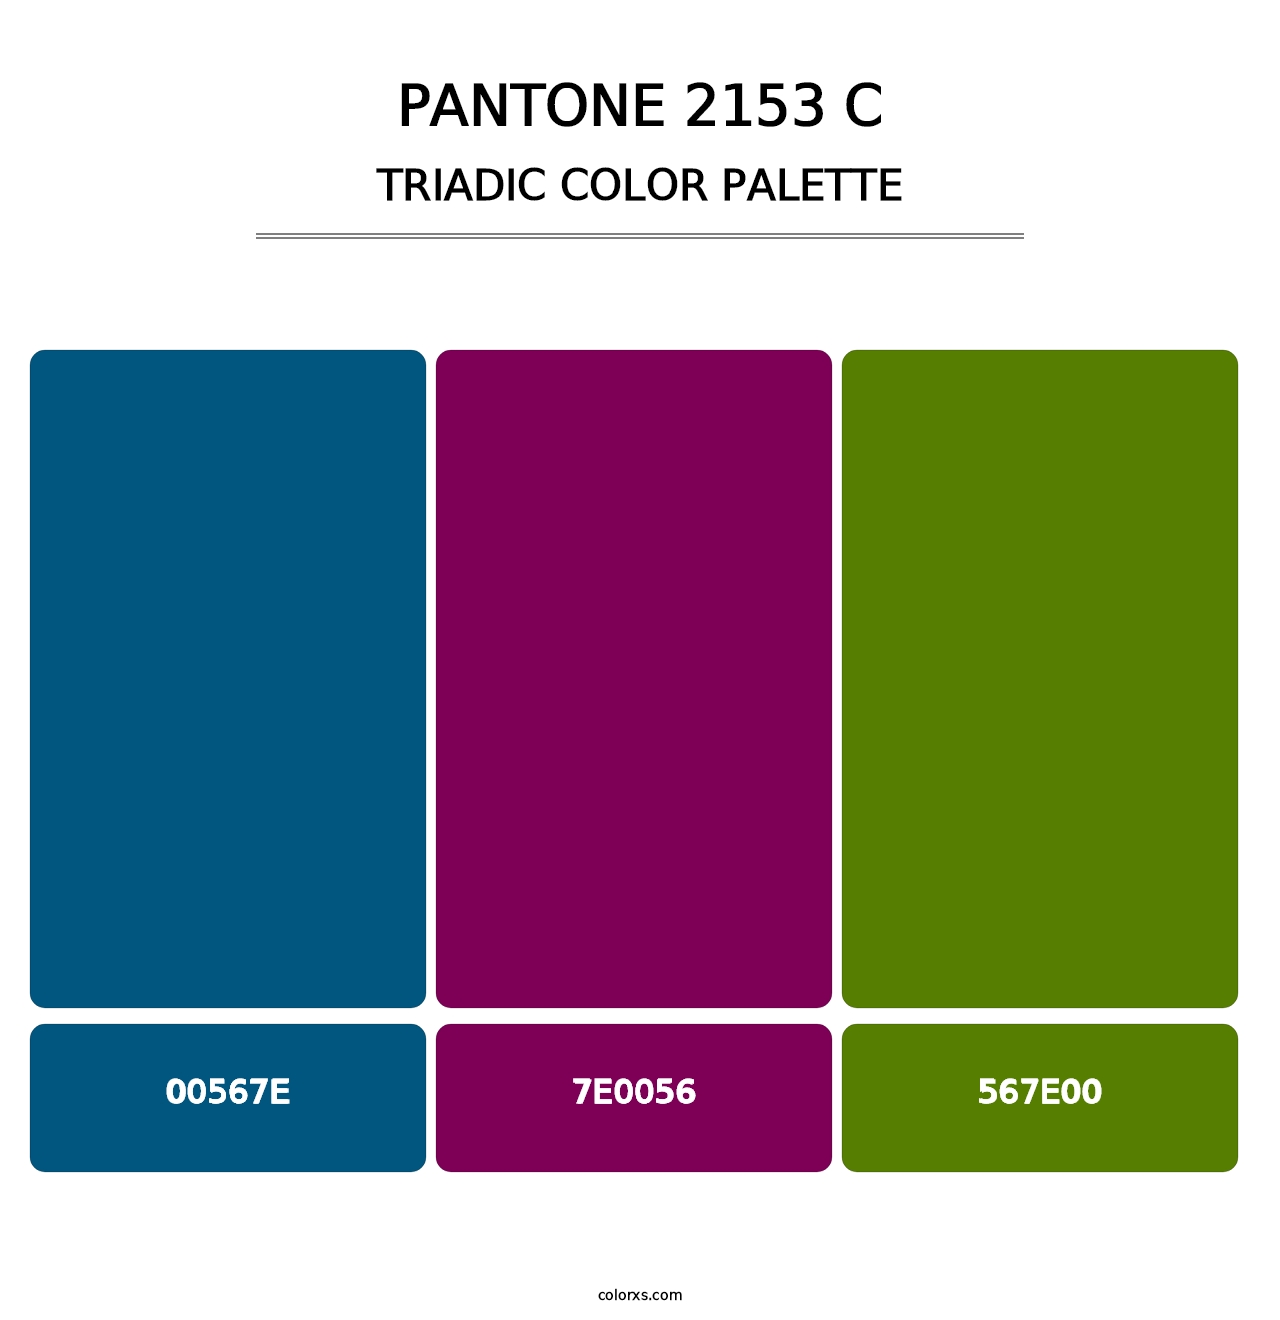 PANTONE 2153 C - Triadic Color Palette